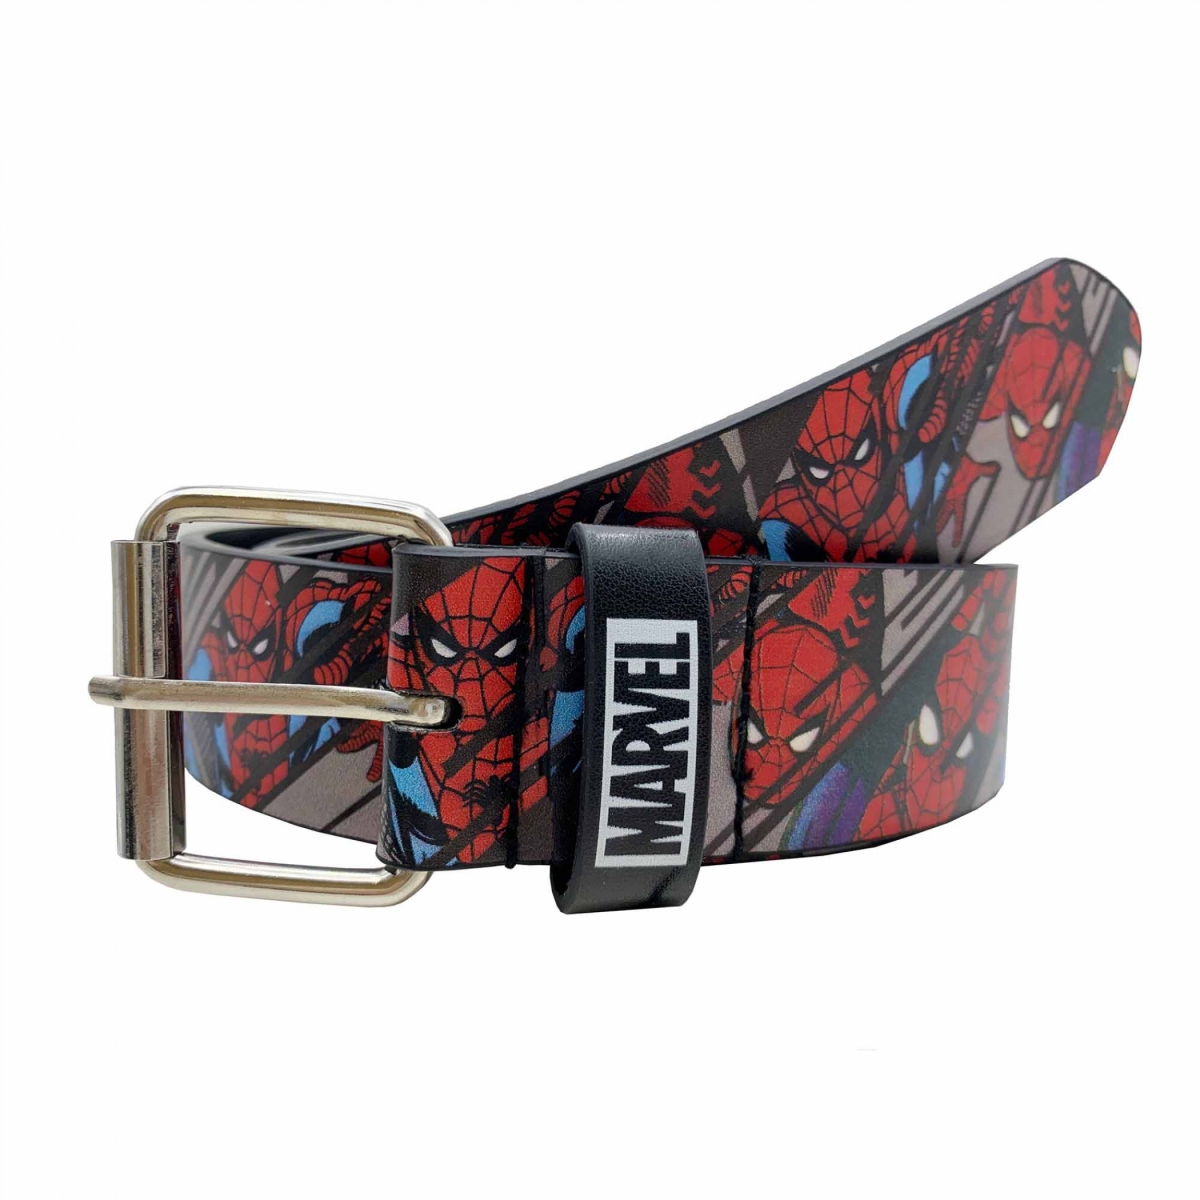 Picture of Spider-Man 854485-s-m Spider-Man Retro Comic Belt - Small & Medium